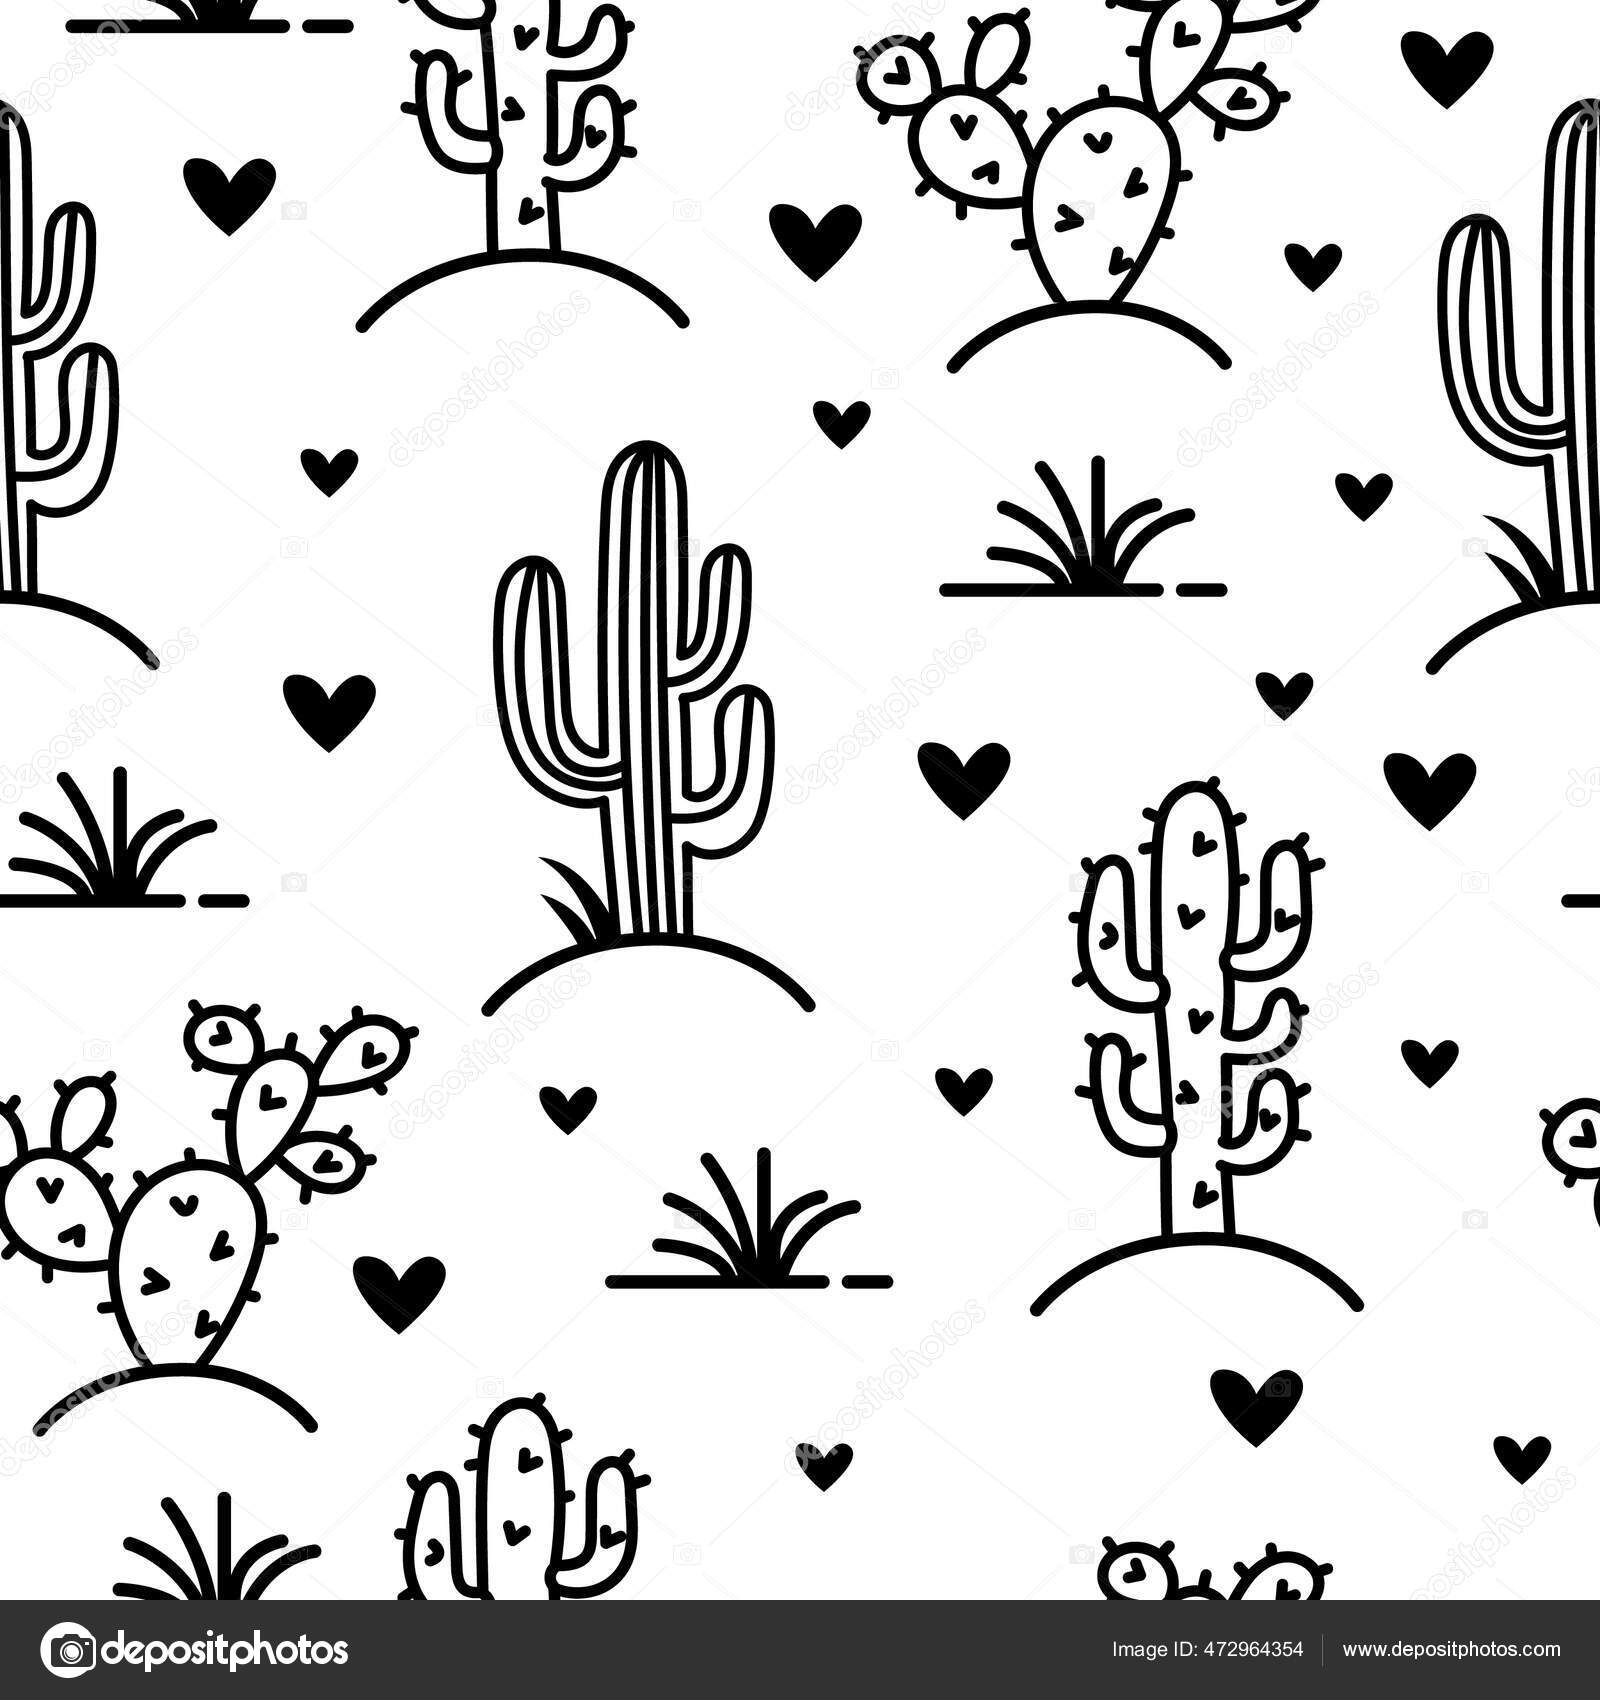 Background Cactus  Festa do cacto, Cactos desenho, Arte com cactos